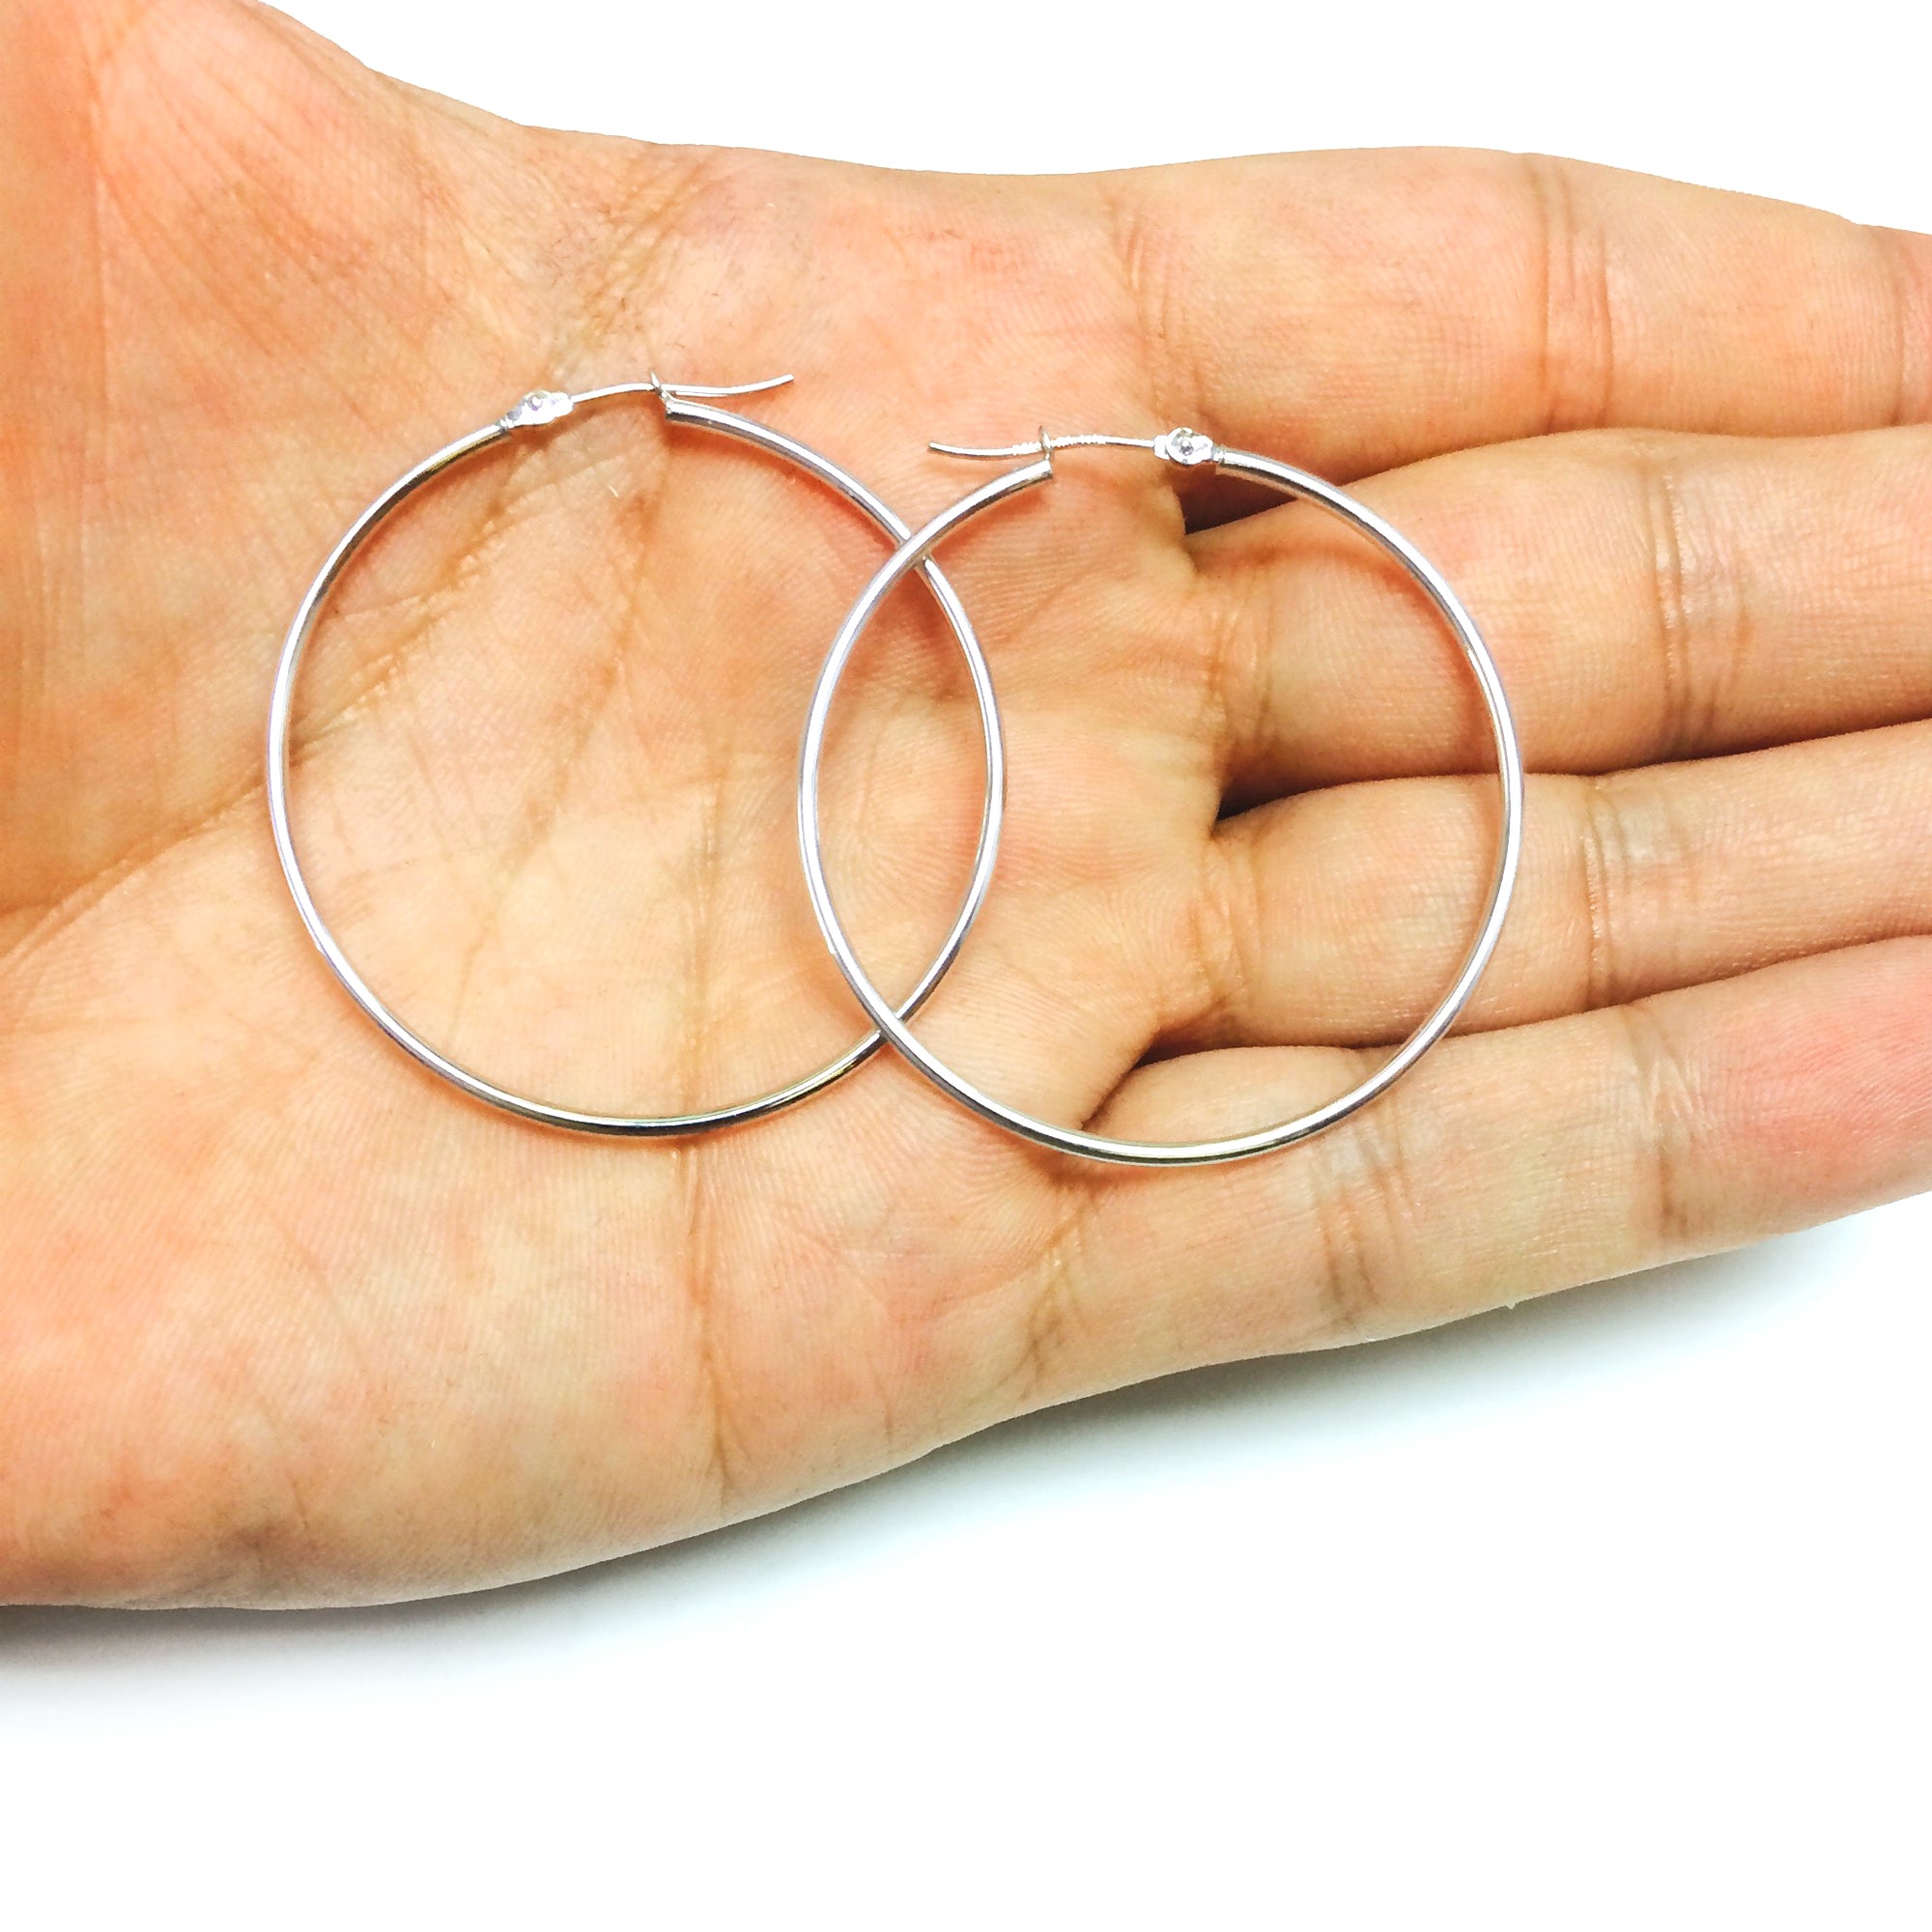 14k White Gold 1.5mm Shiny Round Tube Hoop Earrings fine designer jewelry for men and women